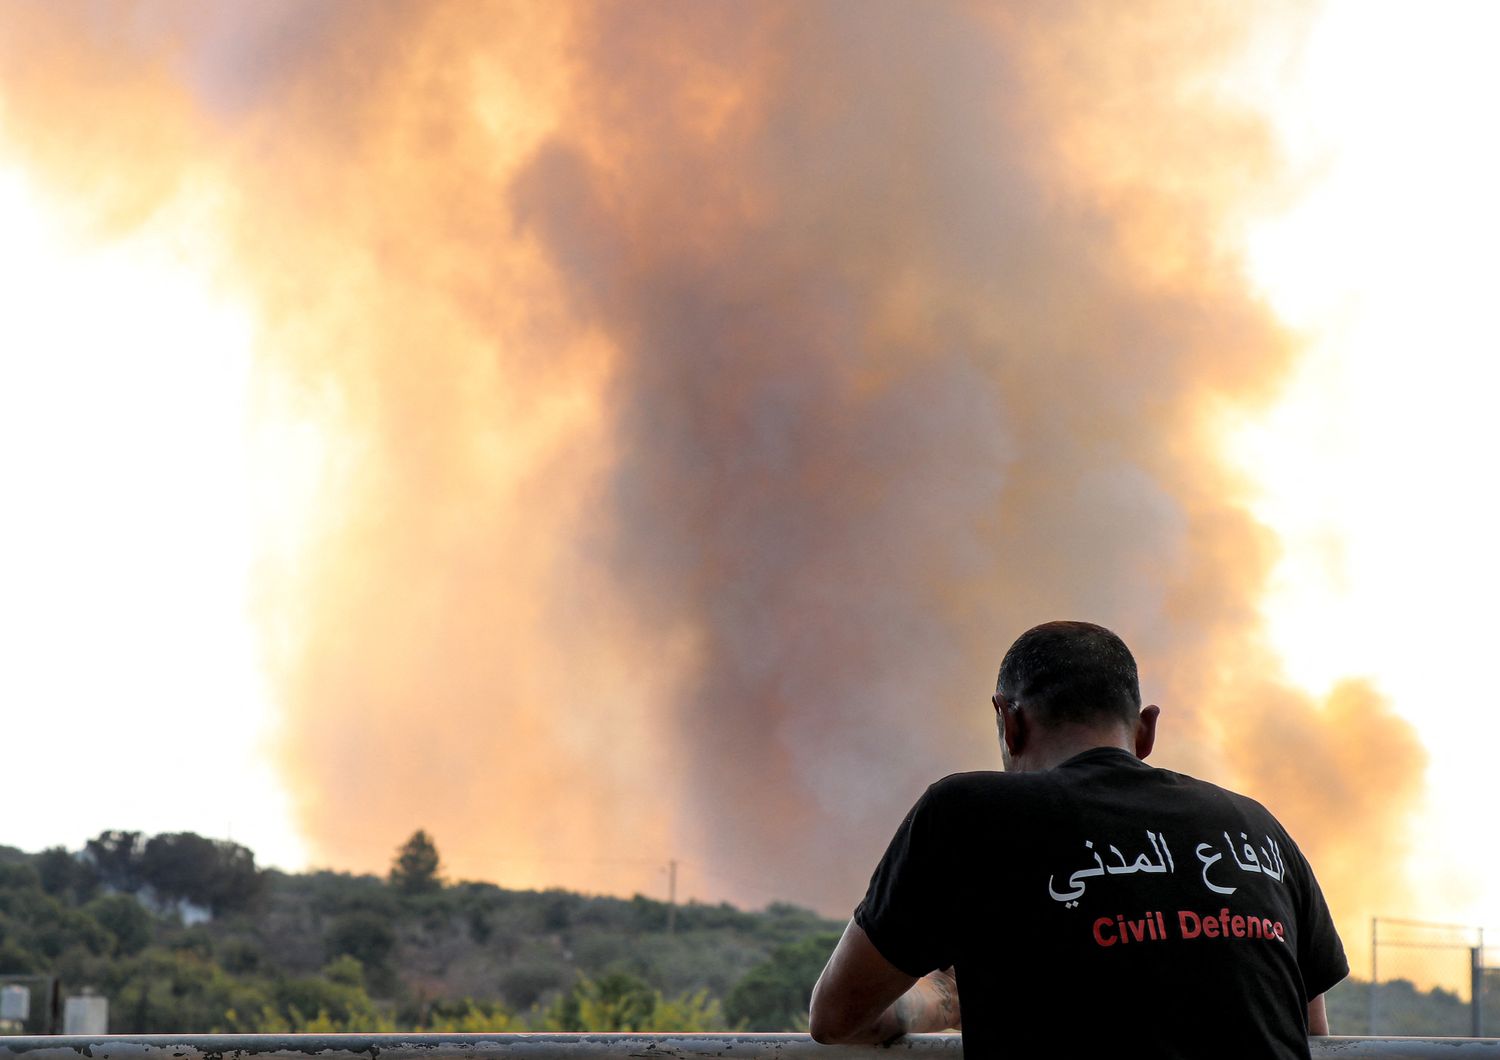 Un operatore umanitario assiste agli scontri al confine tra Israele e Libano